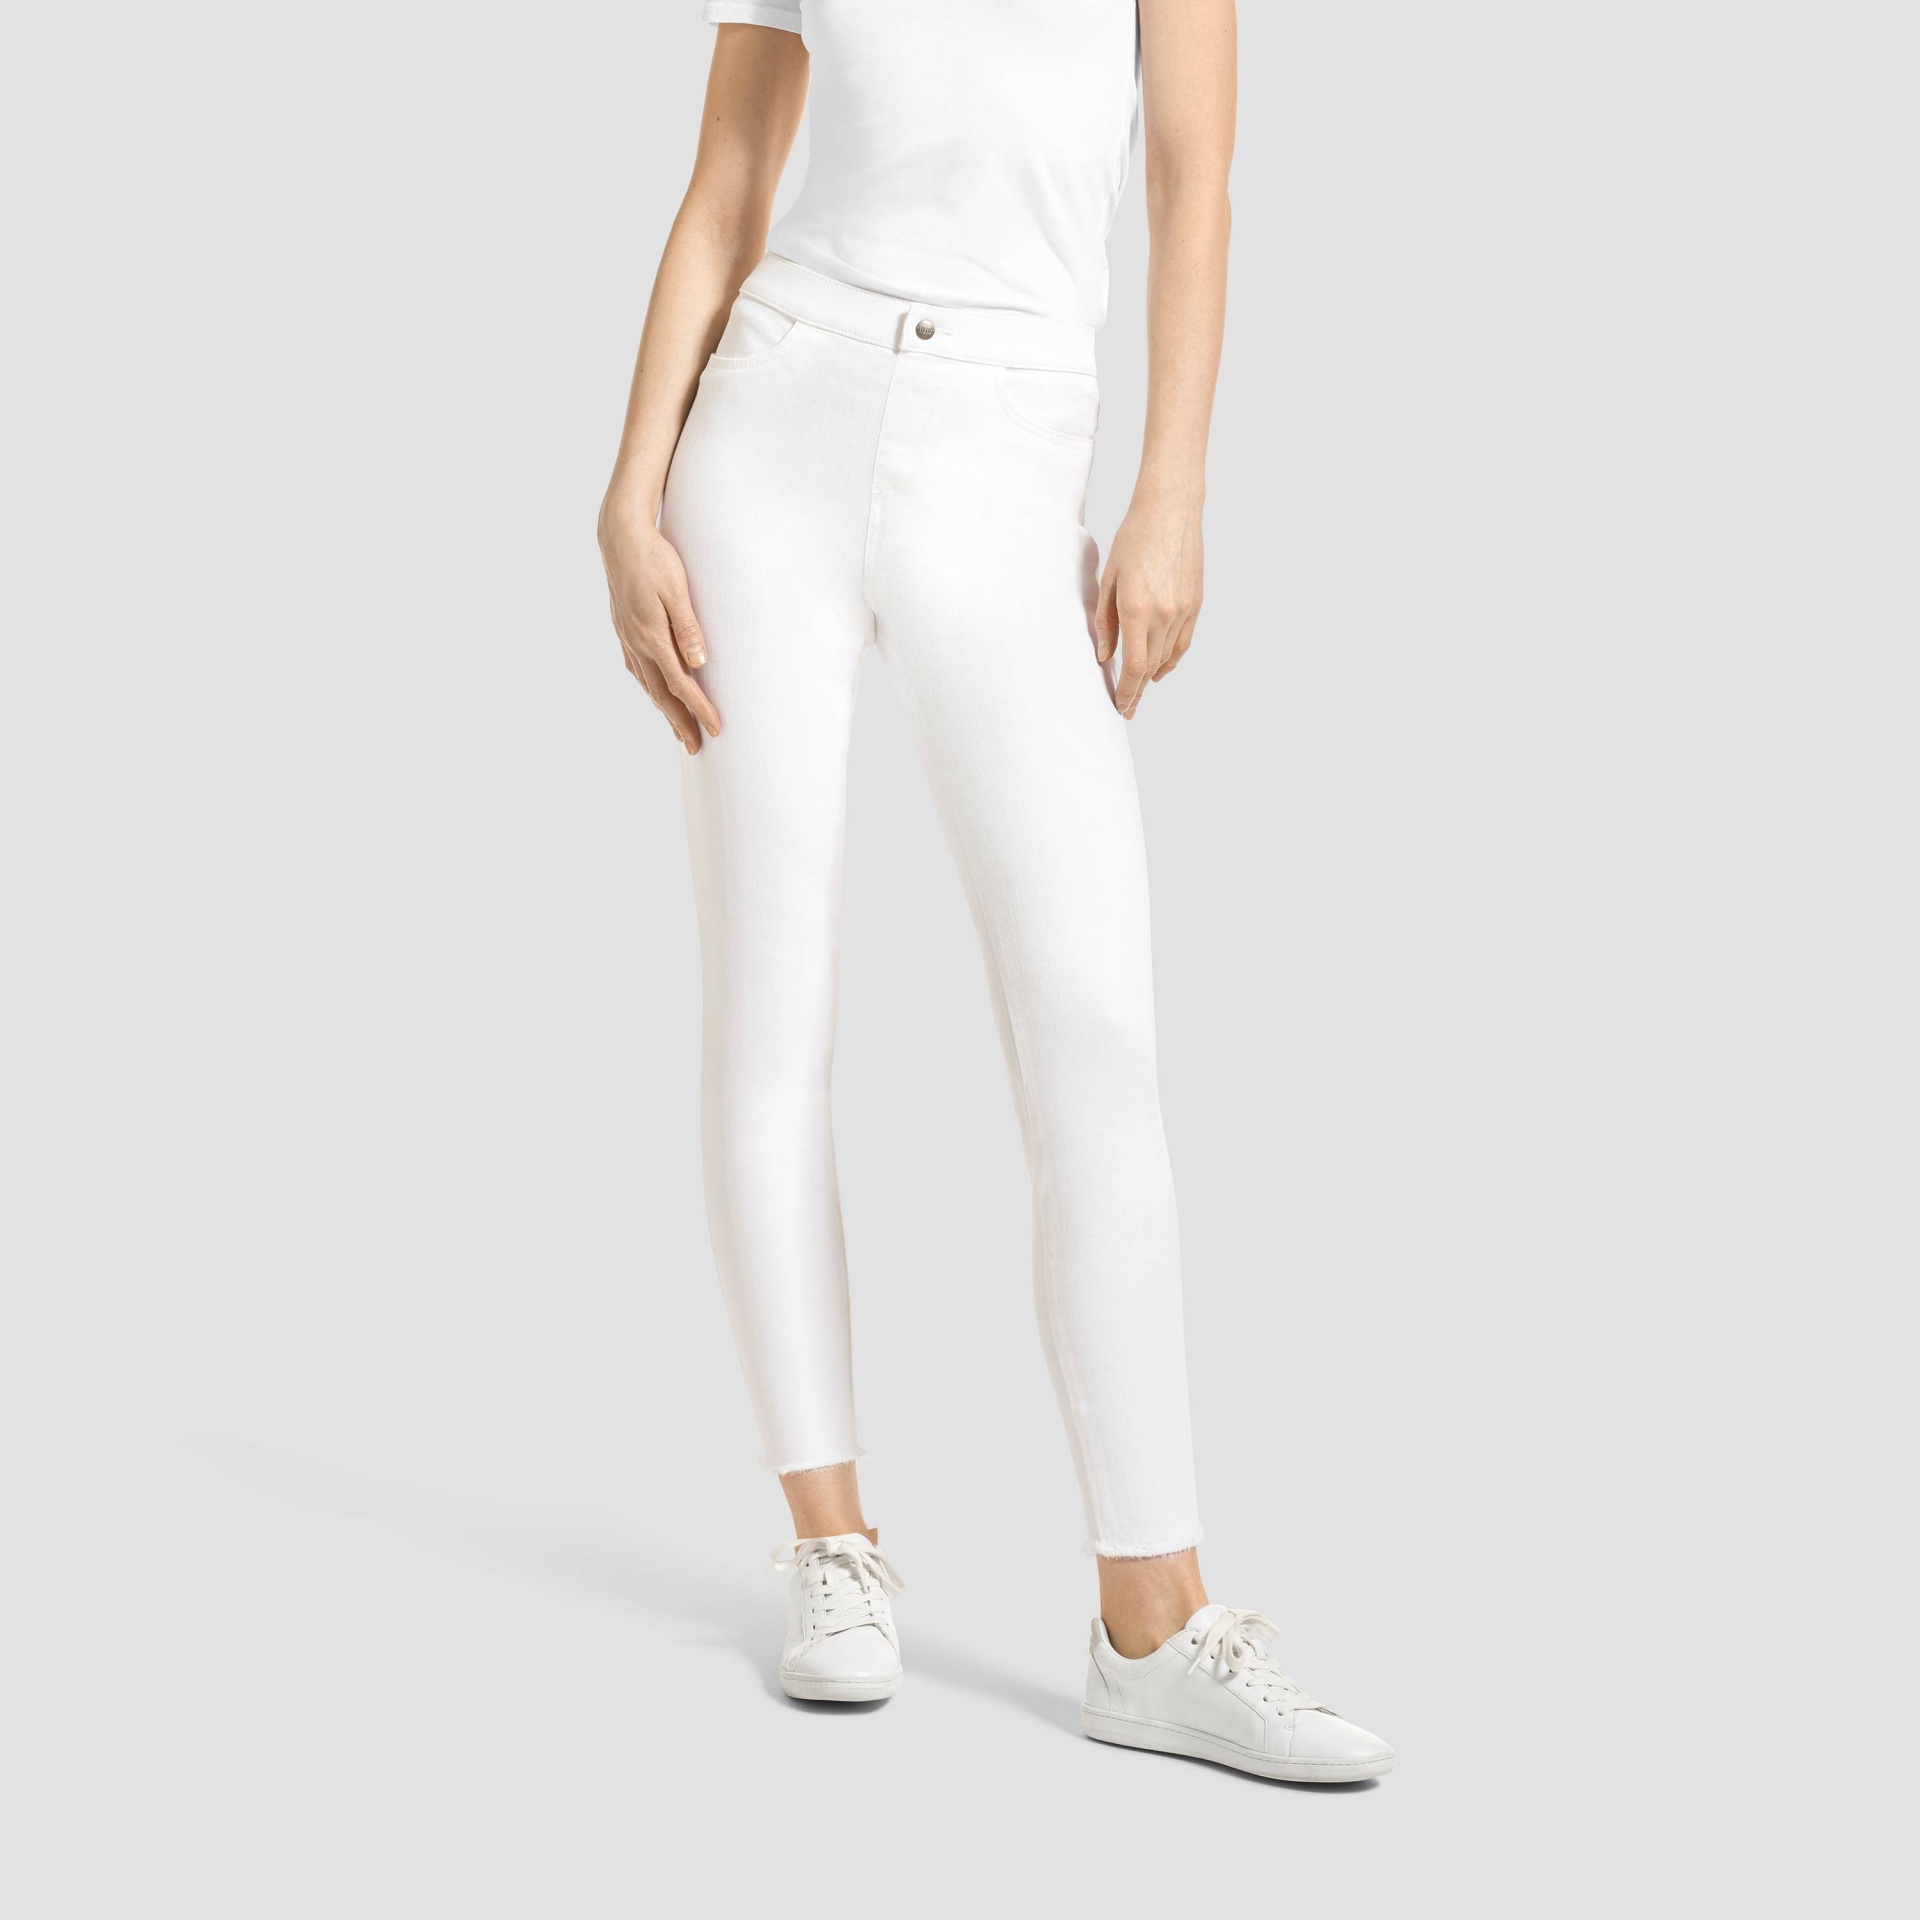 Hue Studio Women's Mid-Rise Frayed Edge Jeans Leggings - White XL 1 ct